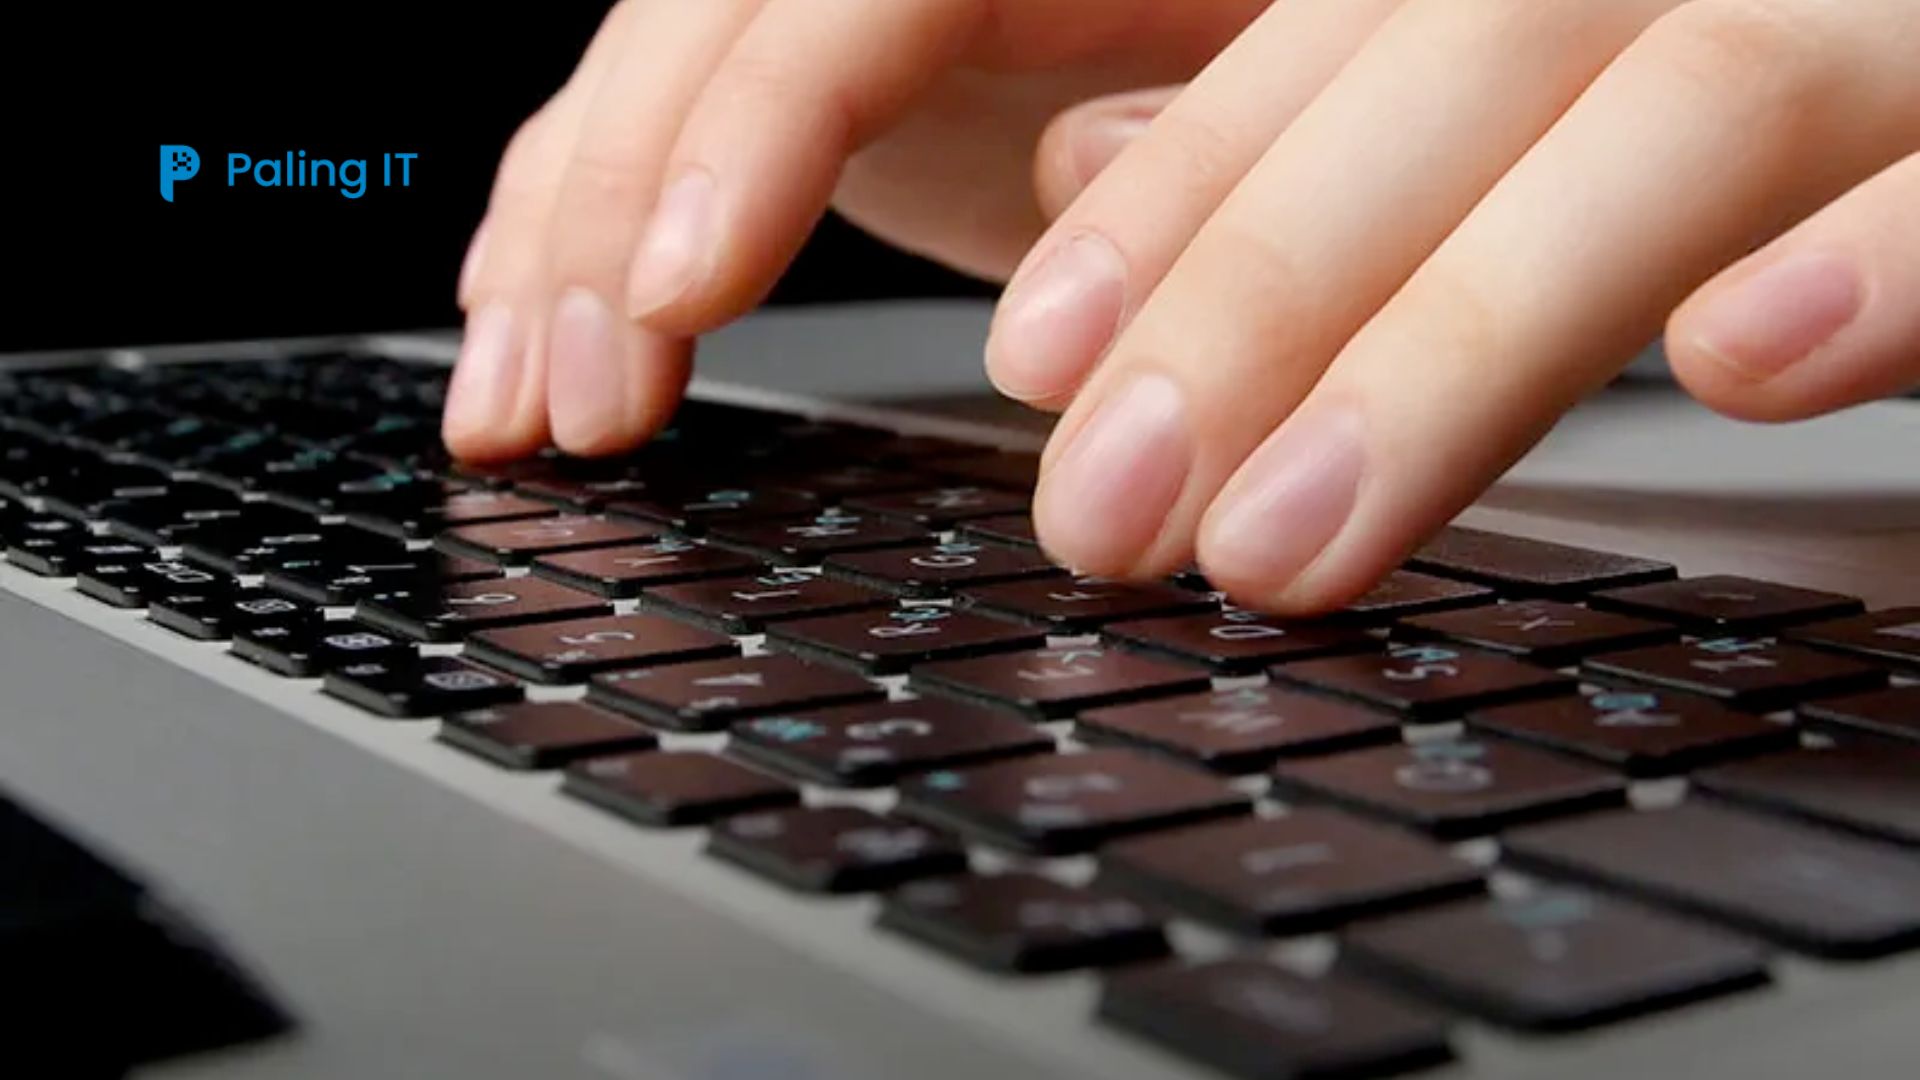 cara menonaktifkan keyboard laptop